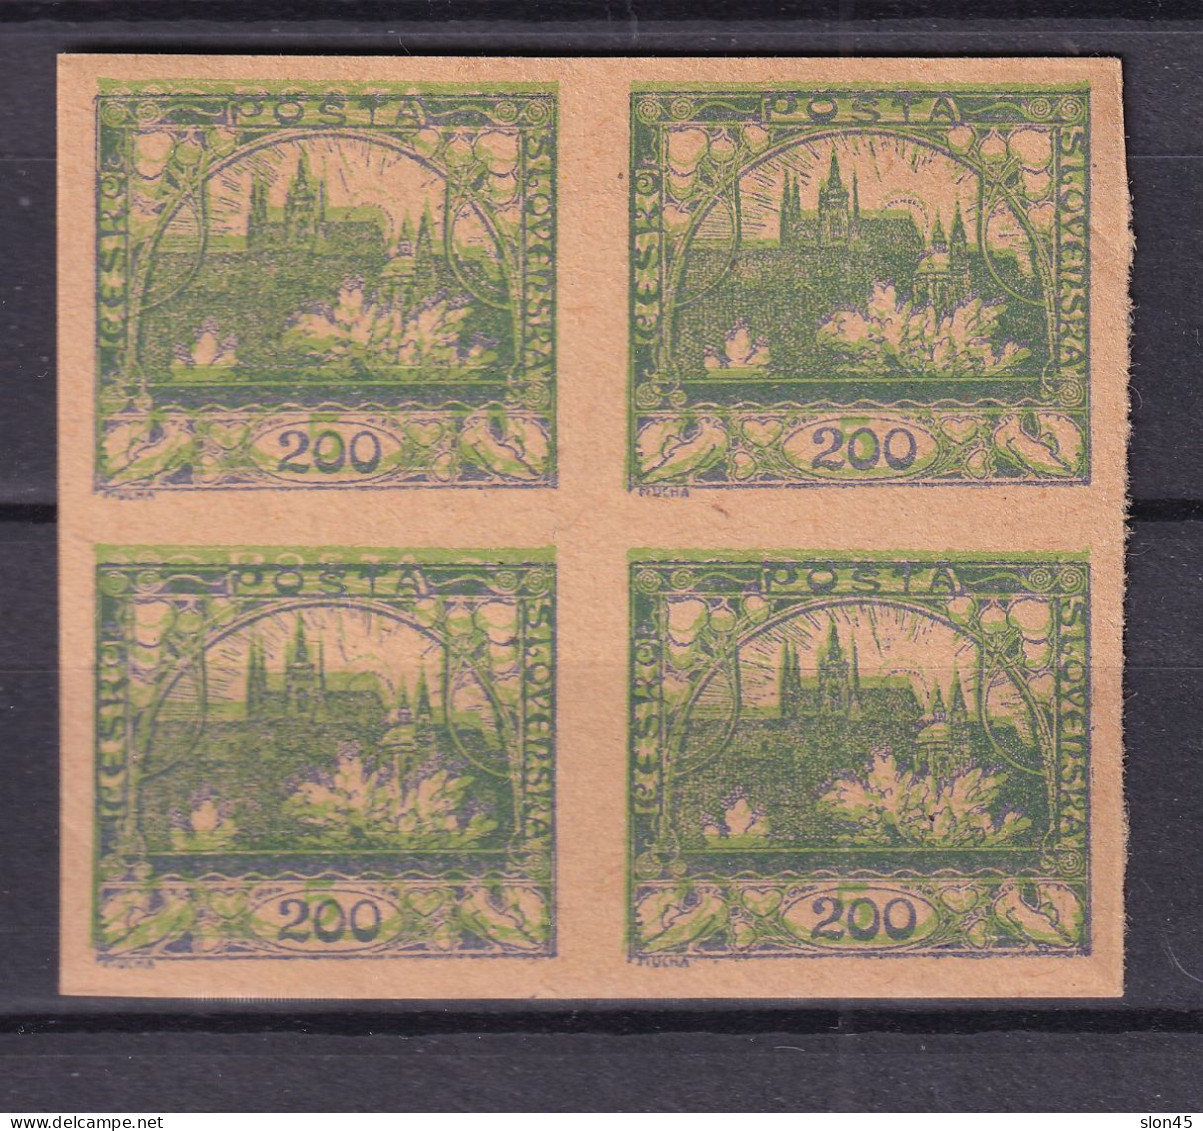 Czechoslovakia 1919 5h Green Imperf Double Print MNG Block Of 4 16080 - Fouten Op Zegels